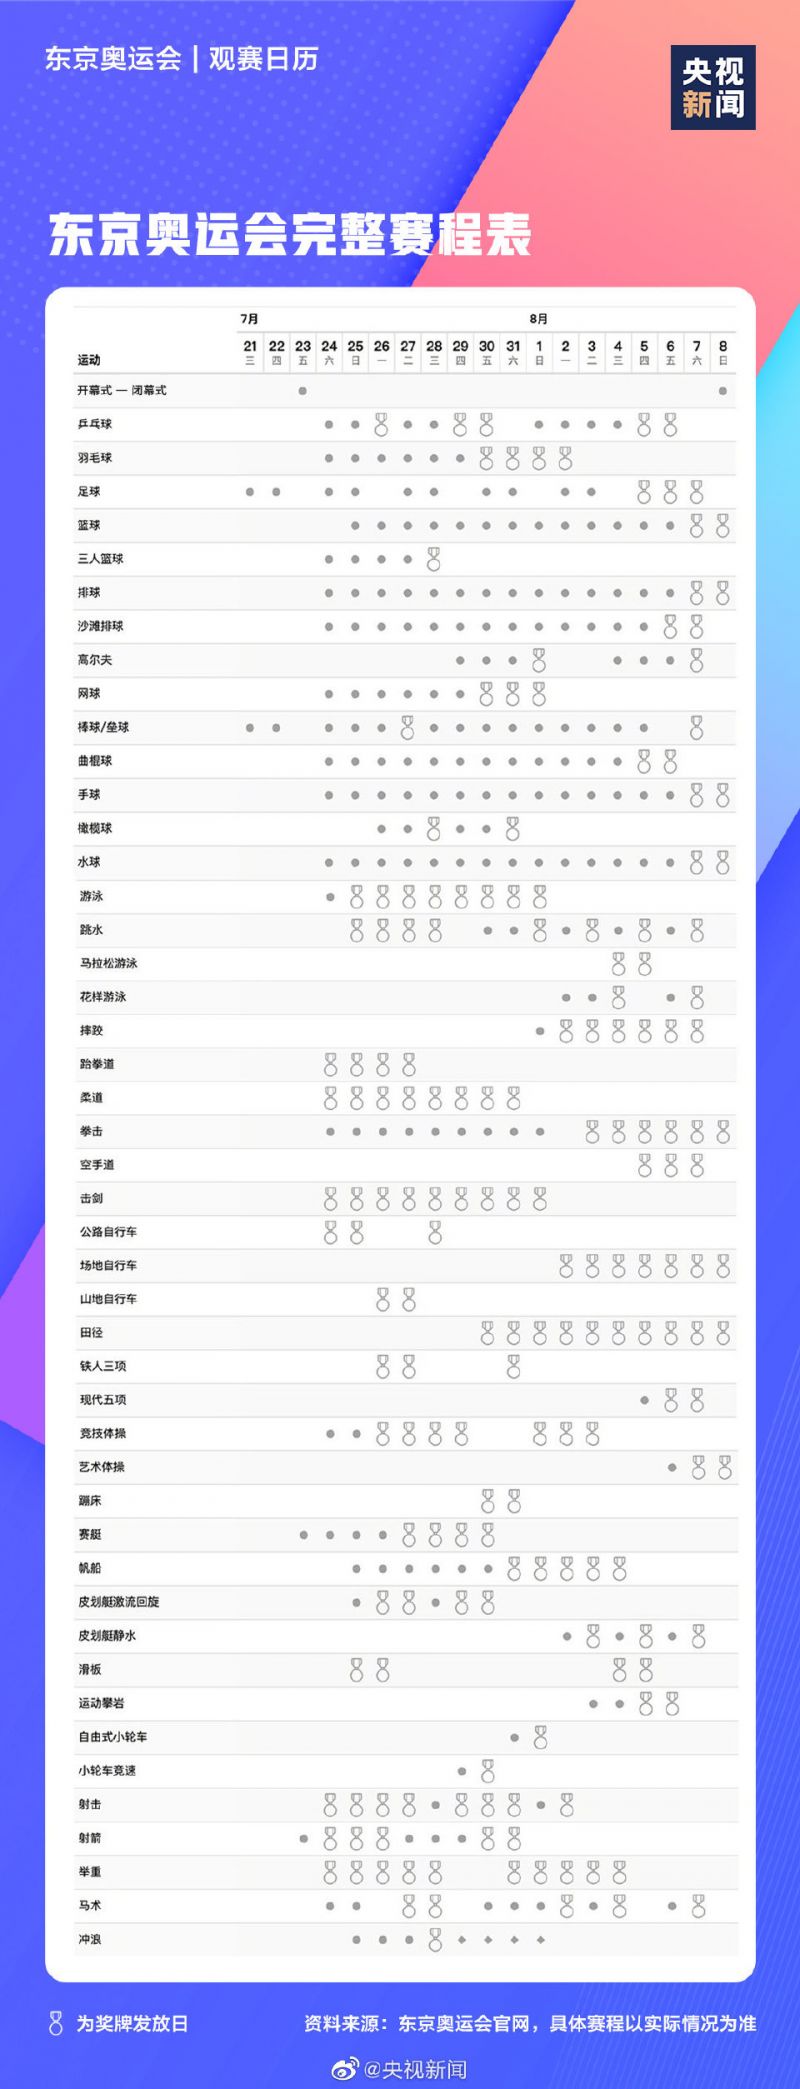 东京奥运会赛程时间表完整版 2021奥运会项目比赛时间安排